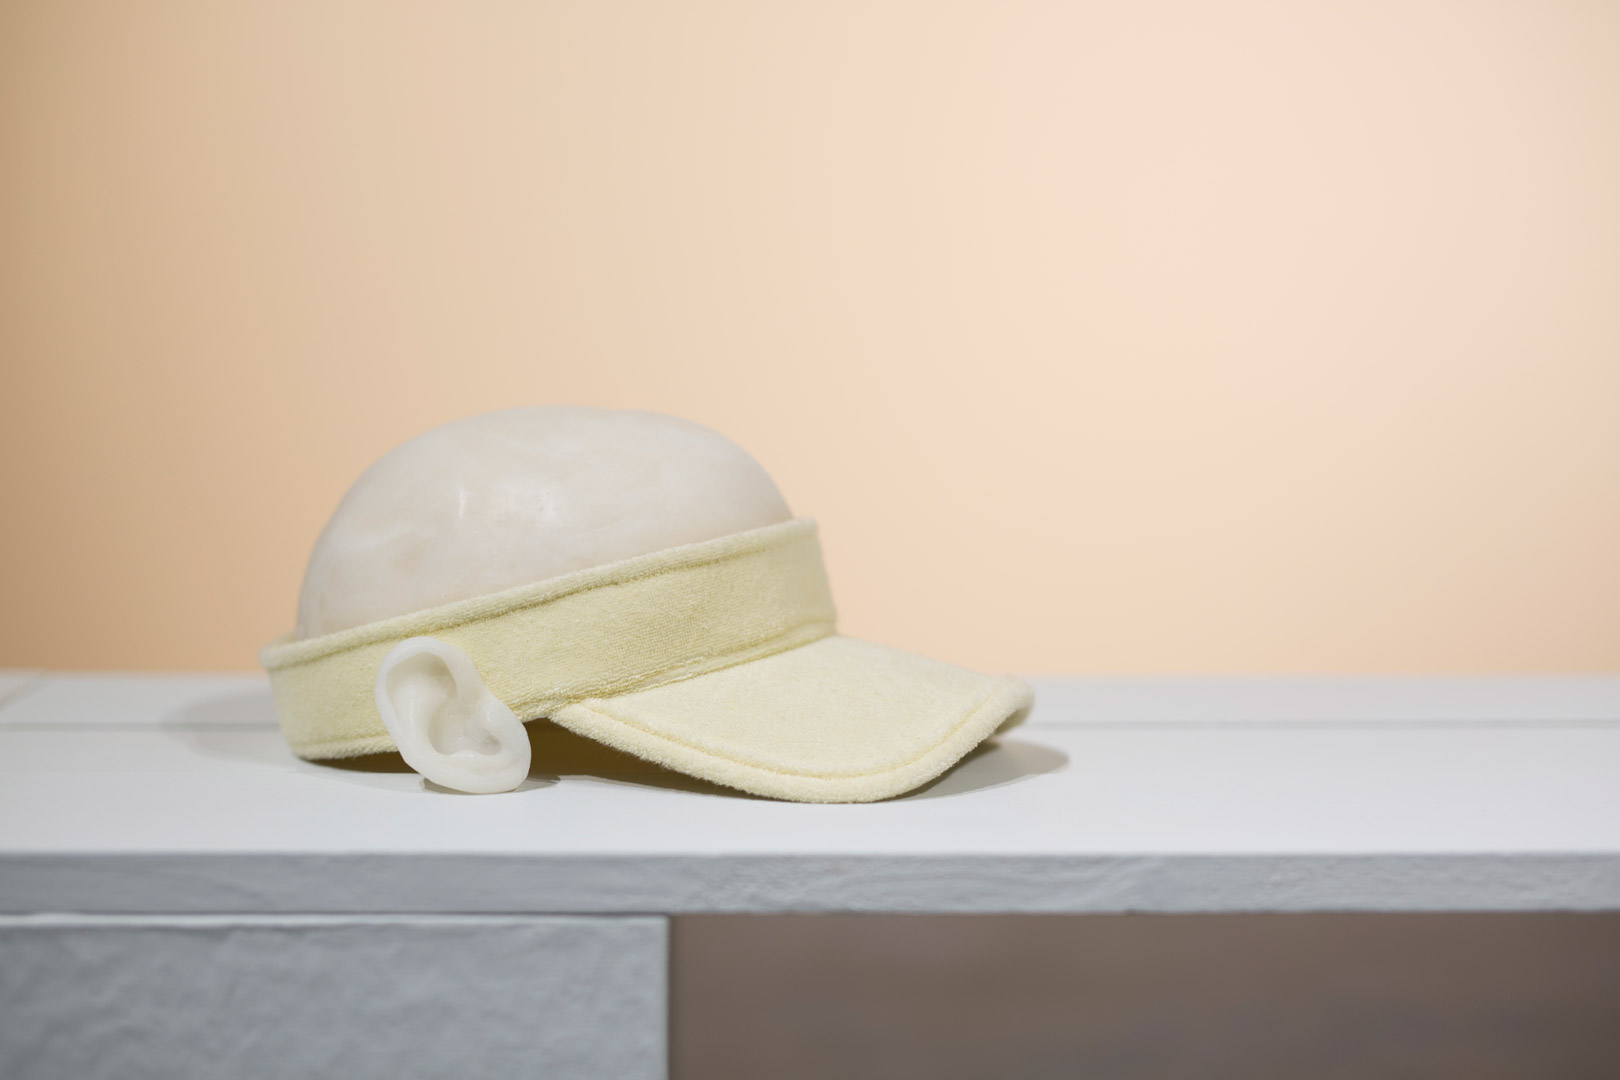 Fragment de l'installation Summer Seum. Focus sur un semblant de casquette en matière composites. Le chapeau est composé à partir d'une visière en éponge jaune pale auquel sont greffé une oreille de cire et une calotte en cire rappelant un crâne. La composition marque une hésitation entre casquette et crâne à nu.